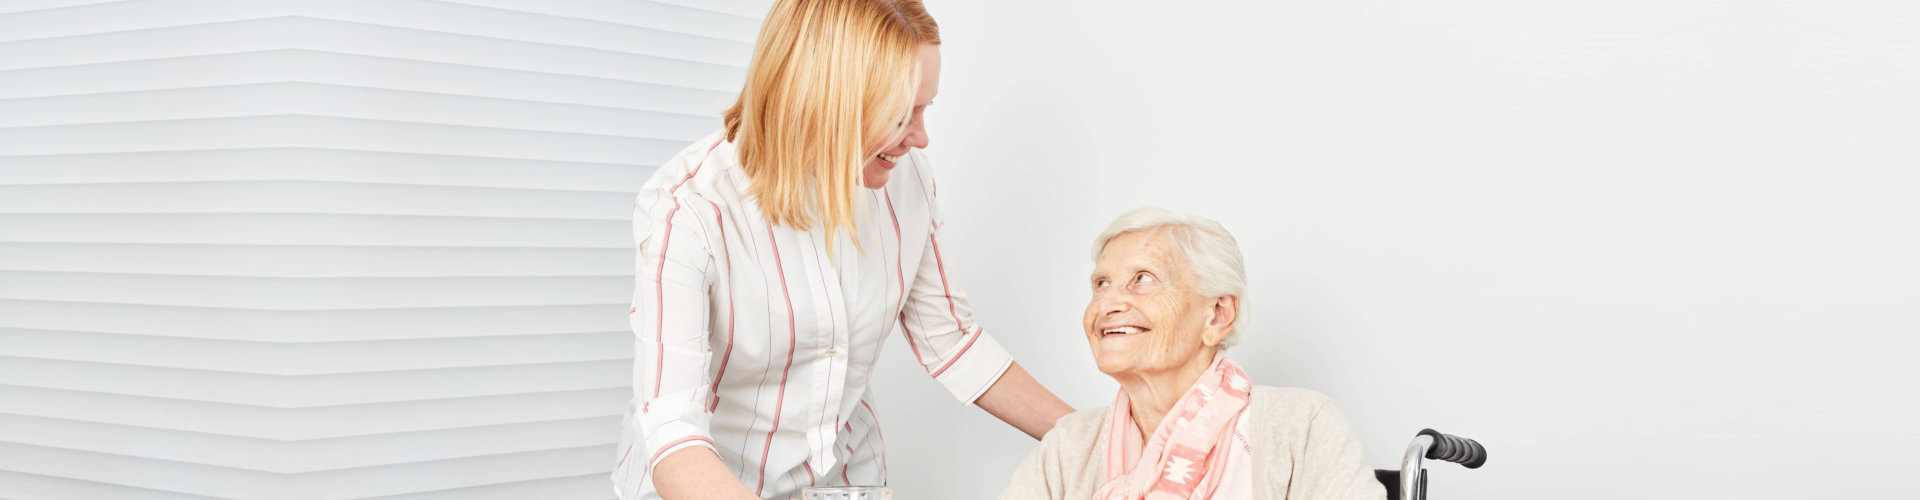 caregiver smiling to a senior woman